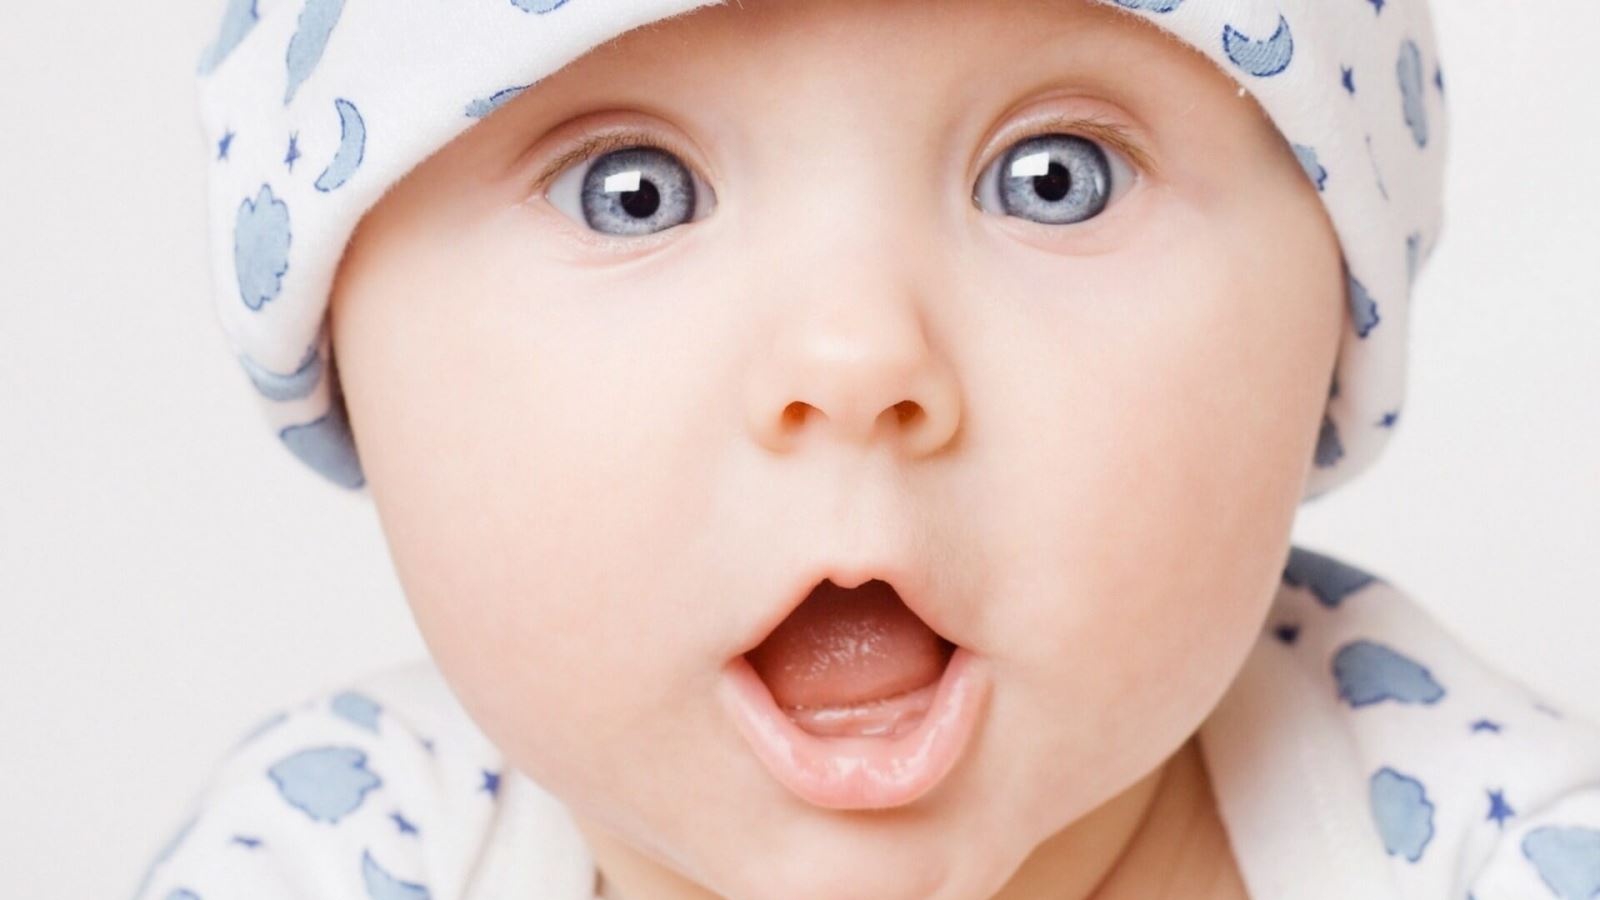  Cách tạo mắt 2 mí cho trẻ sơ sinh : Khác biệt và cách nhìn nhận sự đặc trưng